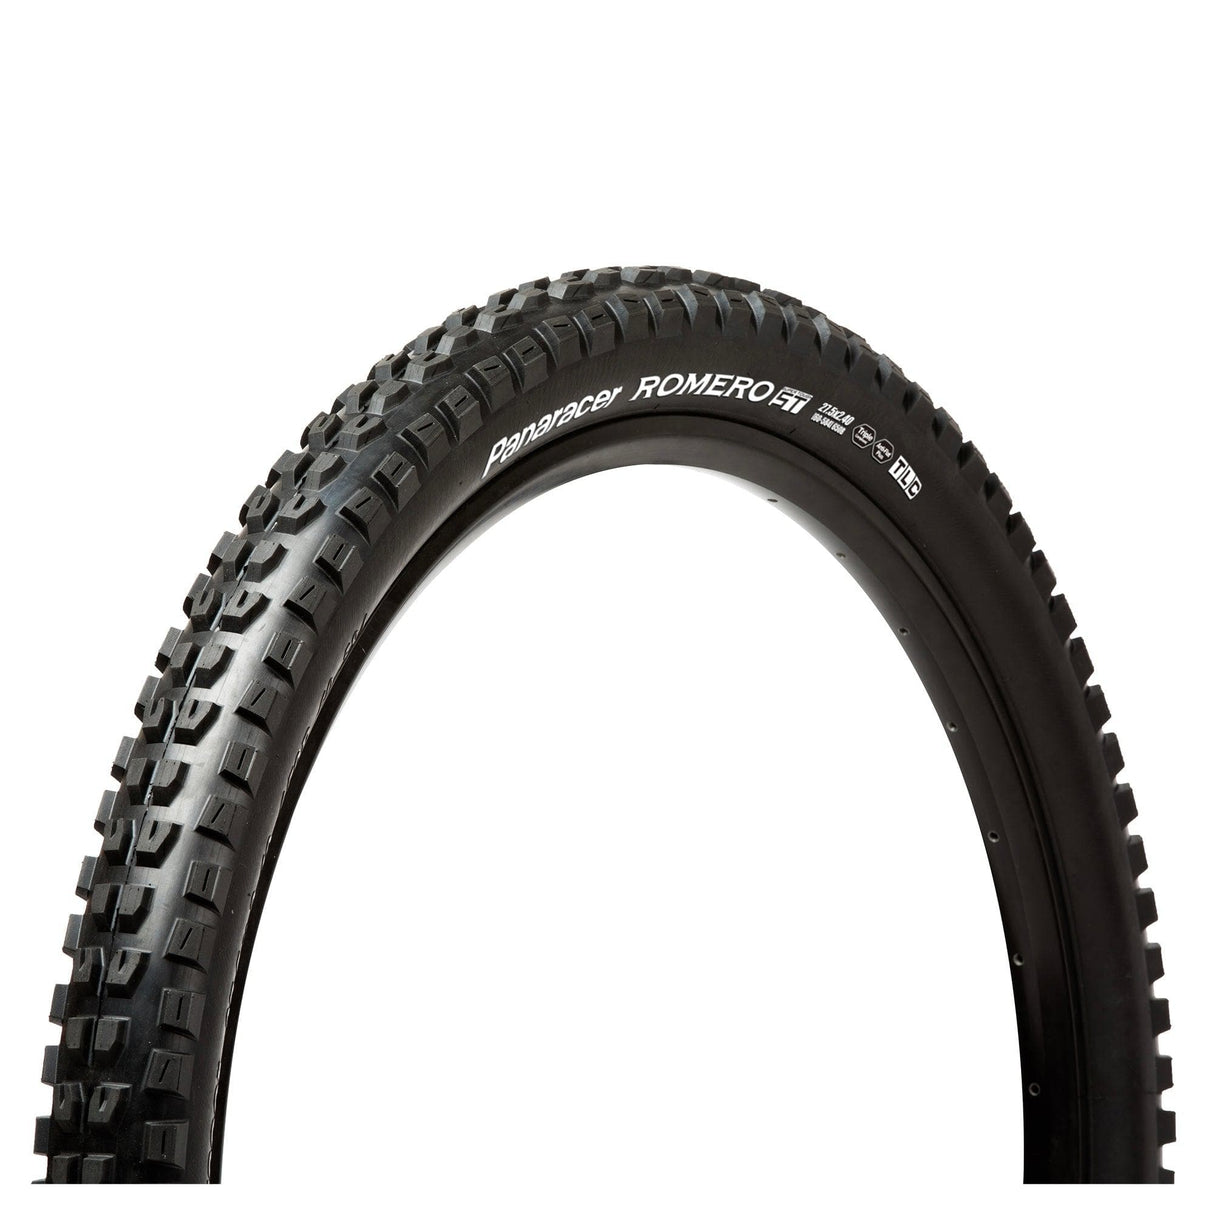 Panaracer Romero St Tubeless Compatible Folding Tyre: Black/Black 27.5X2.40"